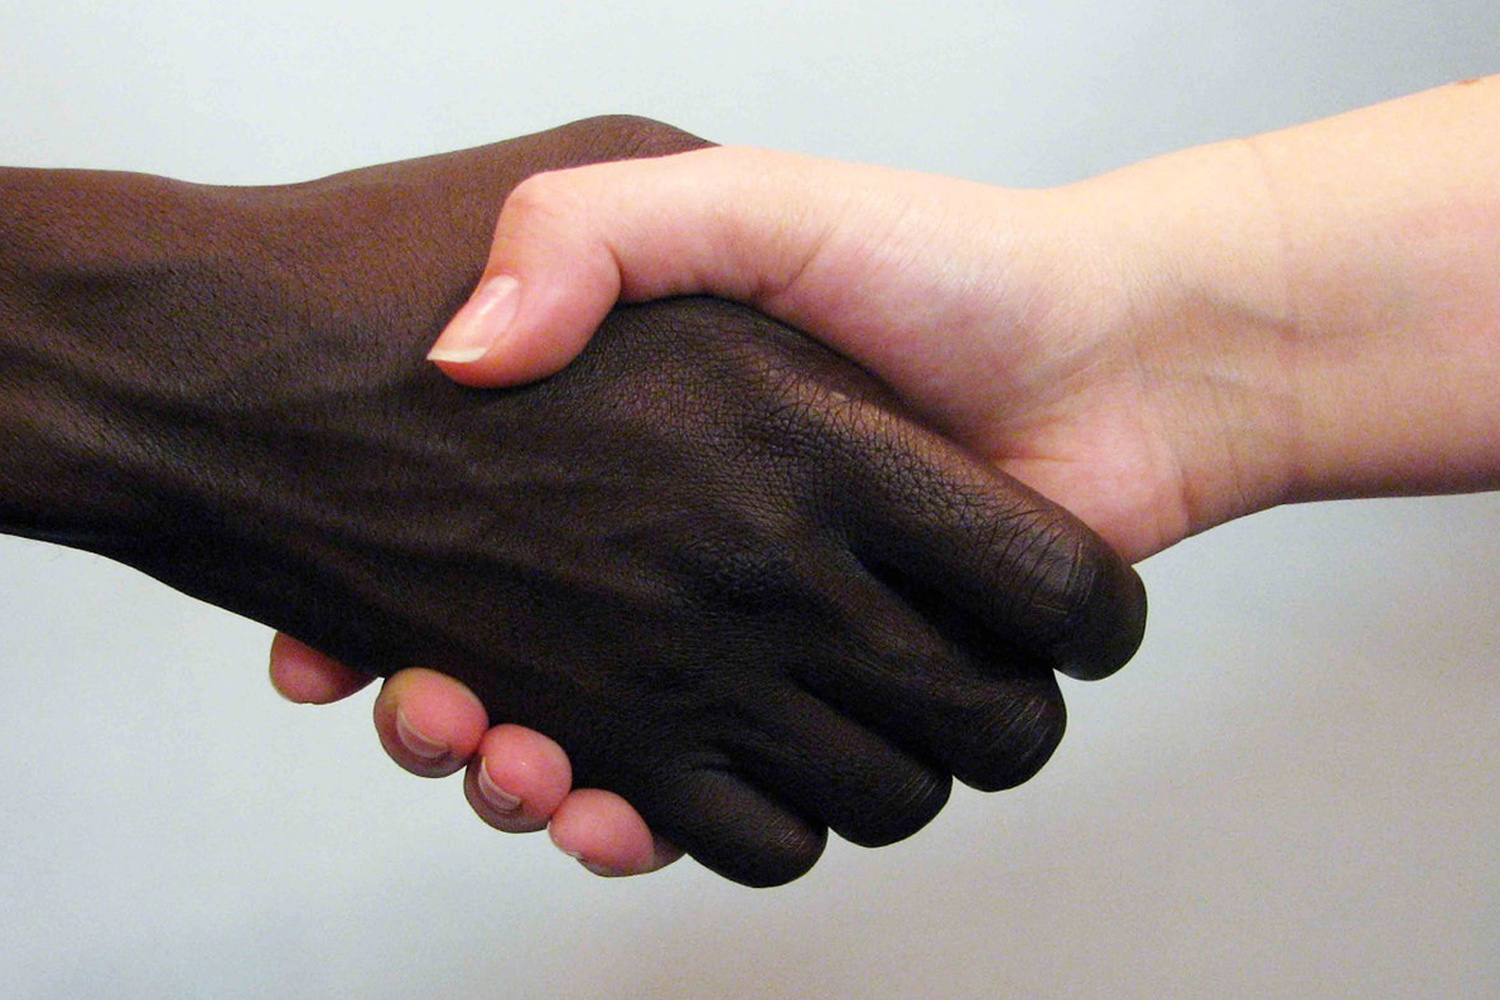 #PraCegoVer: Foto mostra um aperto de mãos. À esquerda está uma mão preta, e à direita uma mão branca.